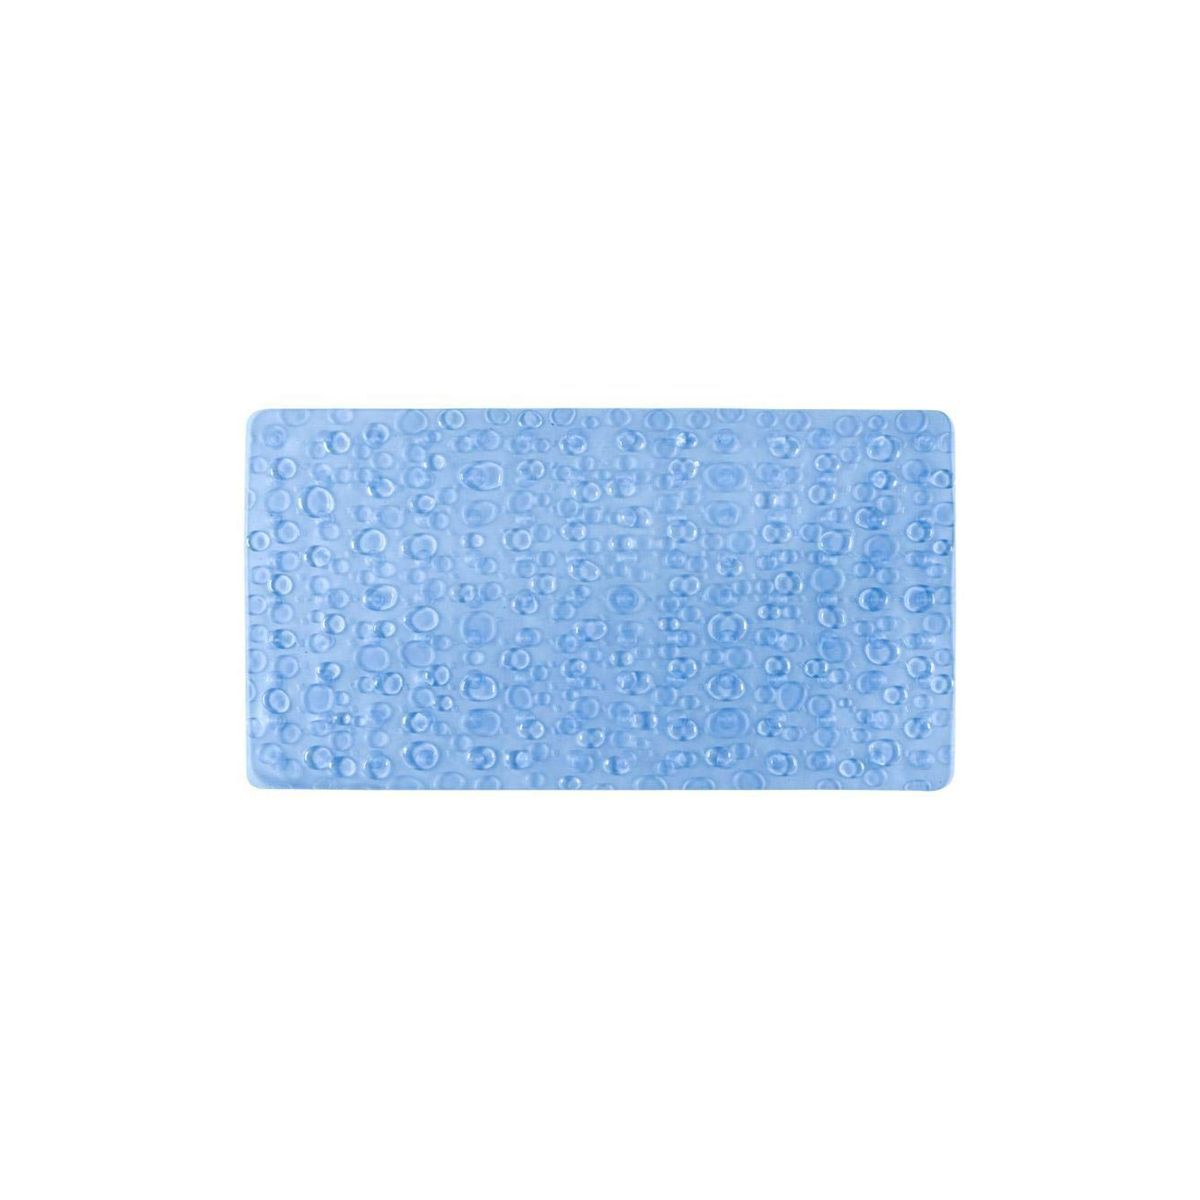 Freelance Pvc Shower Mat Bathroom Bath Tub Non Slip Grip Bathmat Blue (71 X 39 Cm)